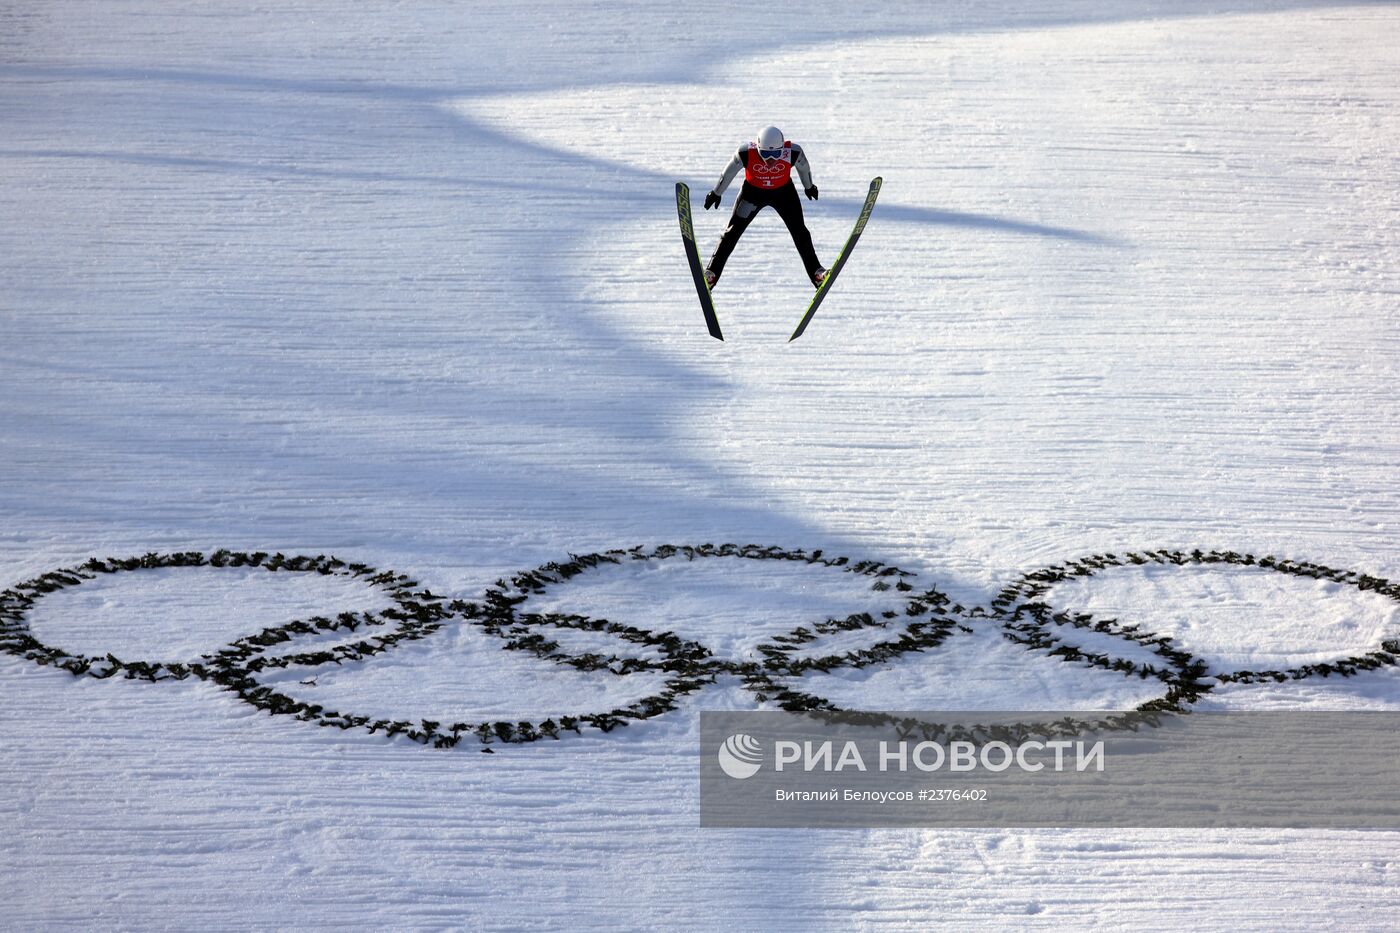 Олимпиада 2014. Лыжное двоеборье. Тренировки